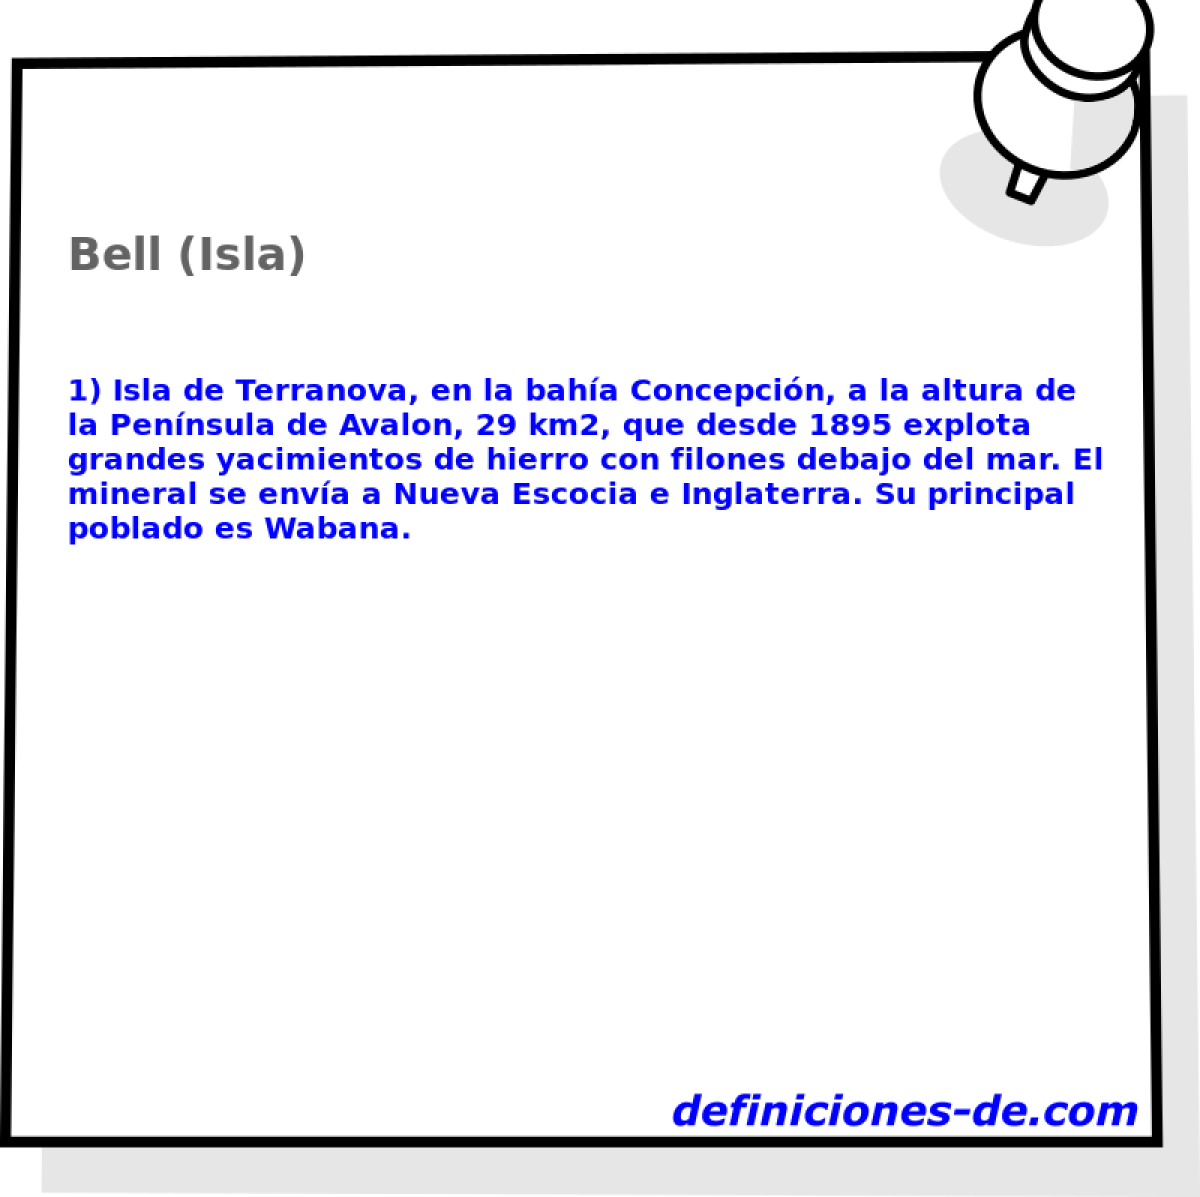 Bell (Isla) 